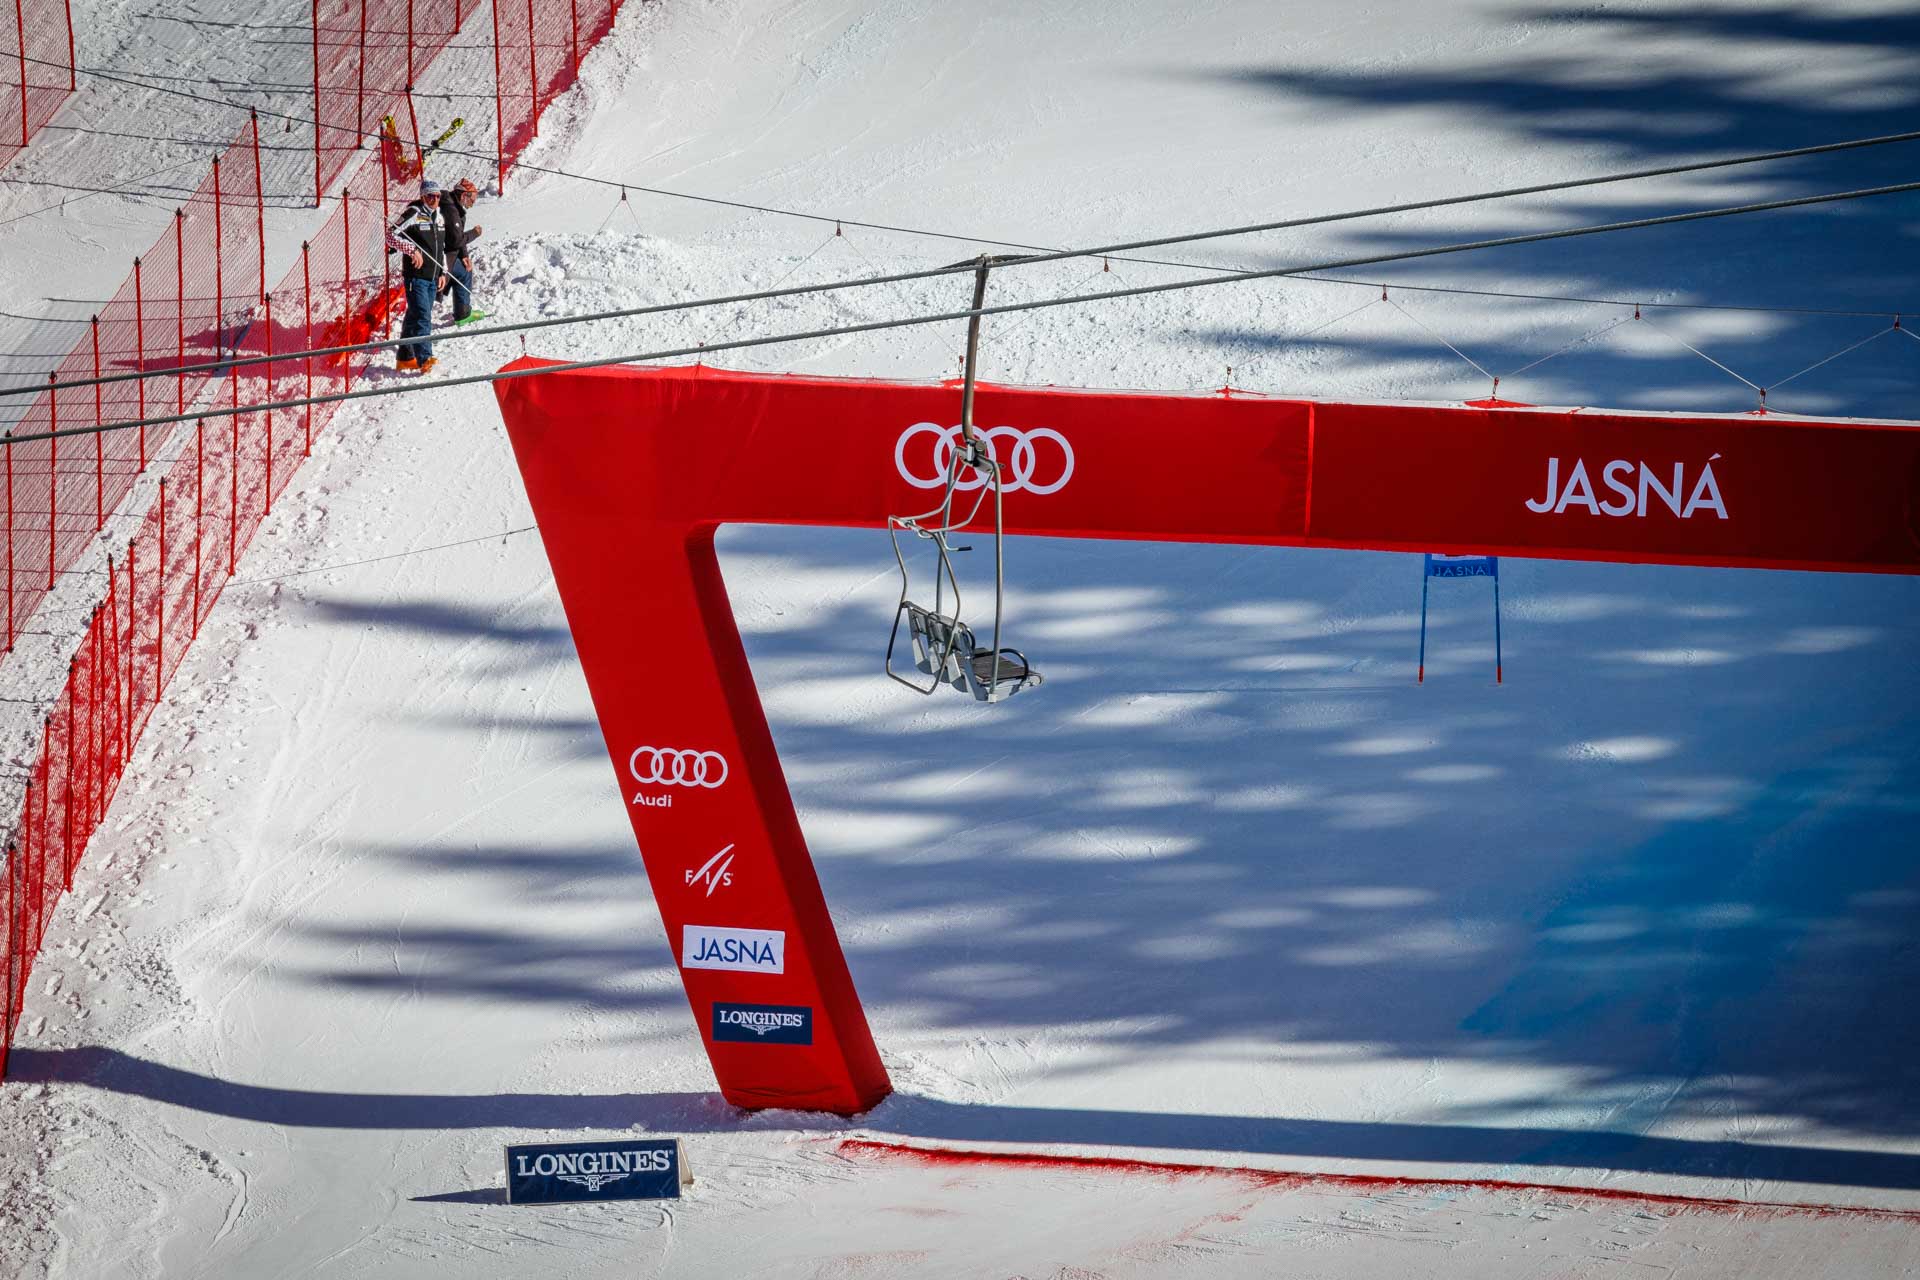 Cieľová rovina Audi fis ski World cup